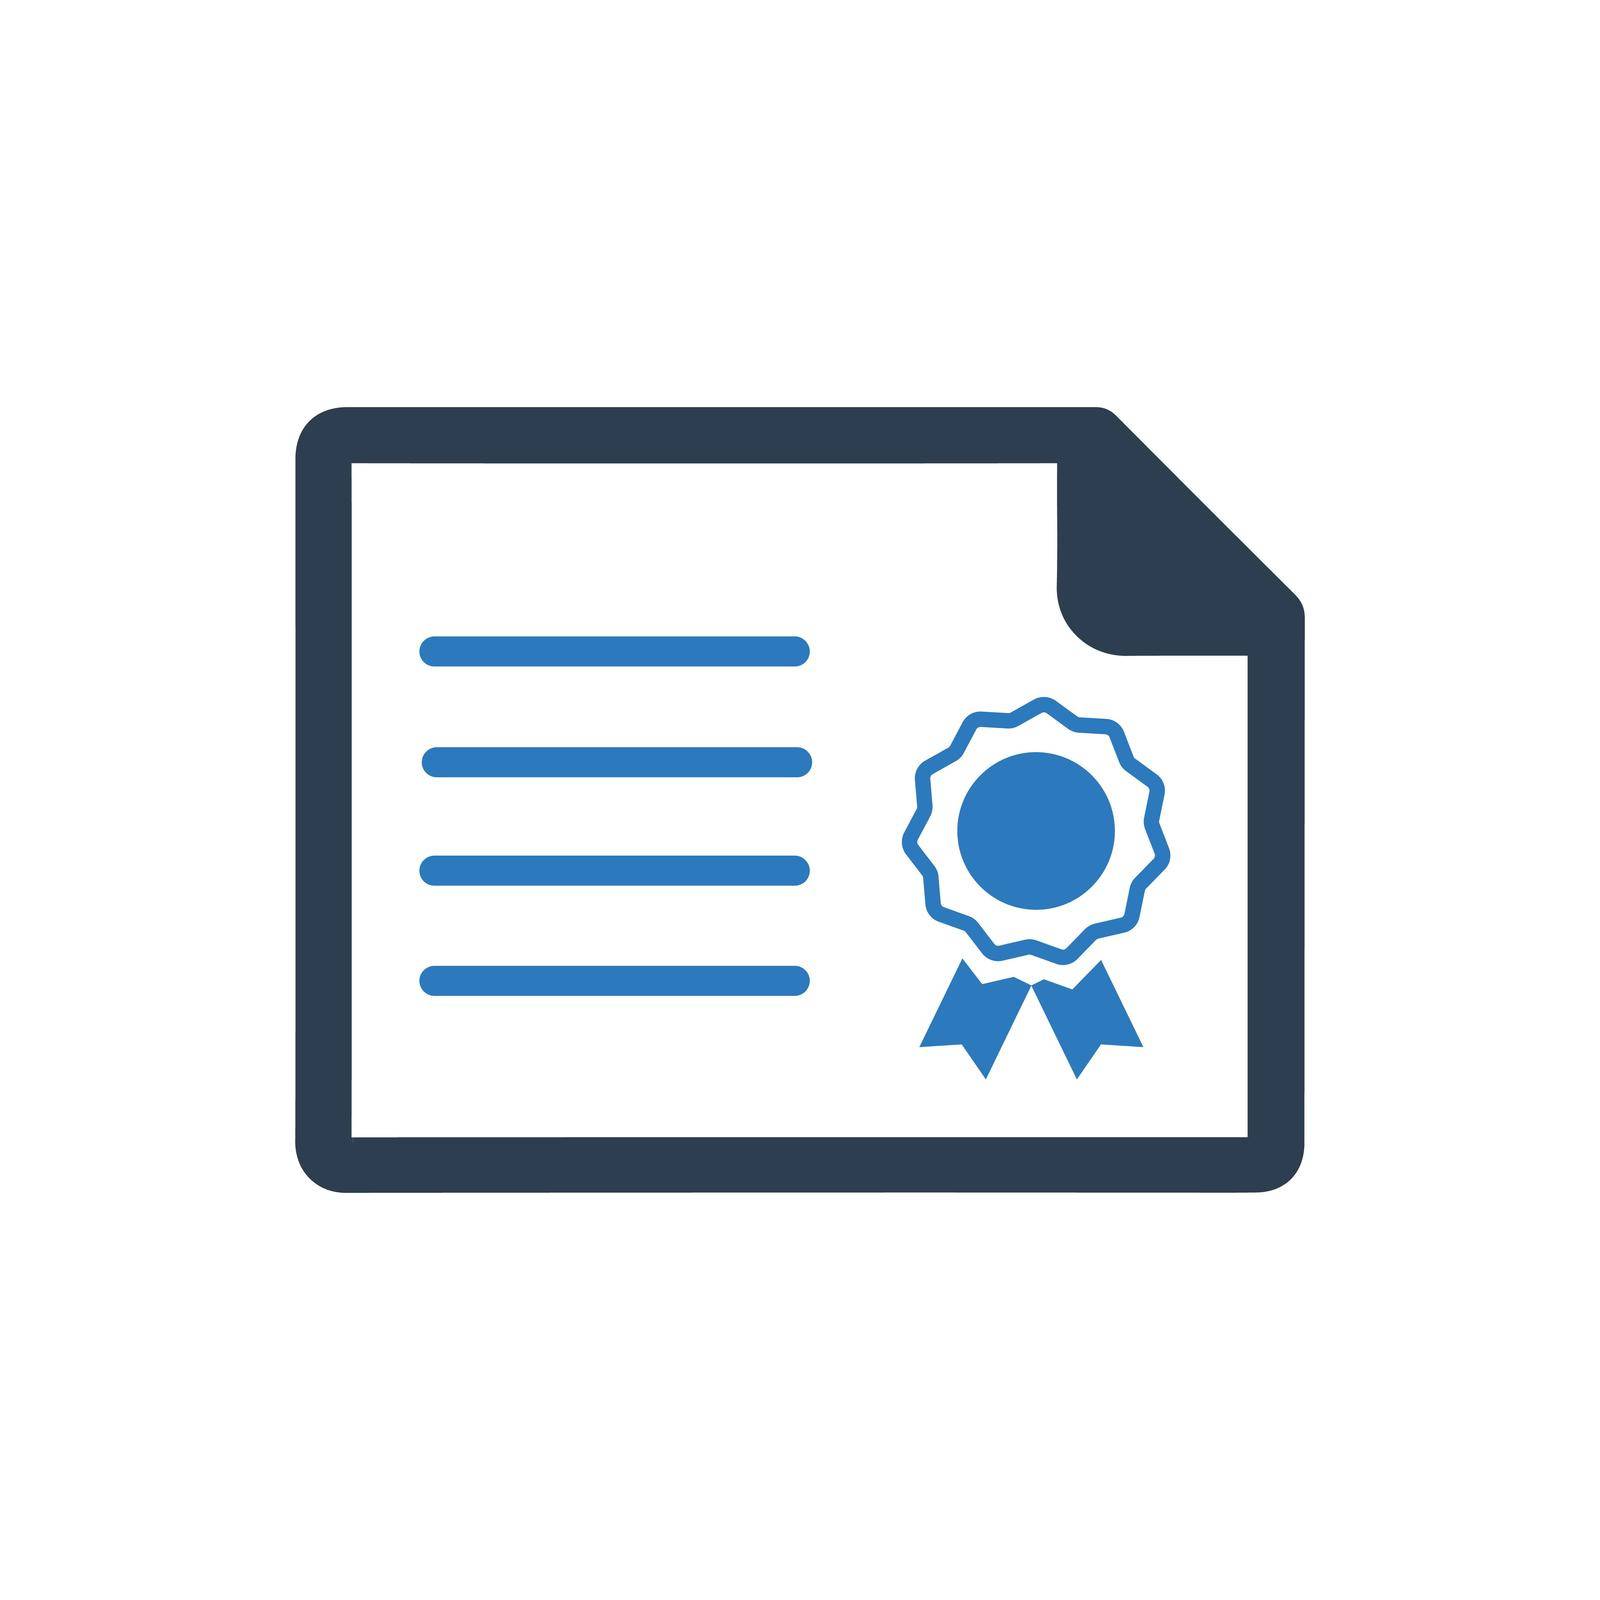 Achievement, Certificate icon. Vector EPS file.